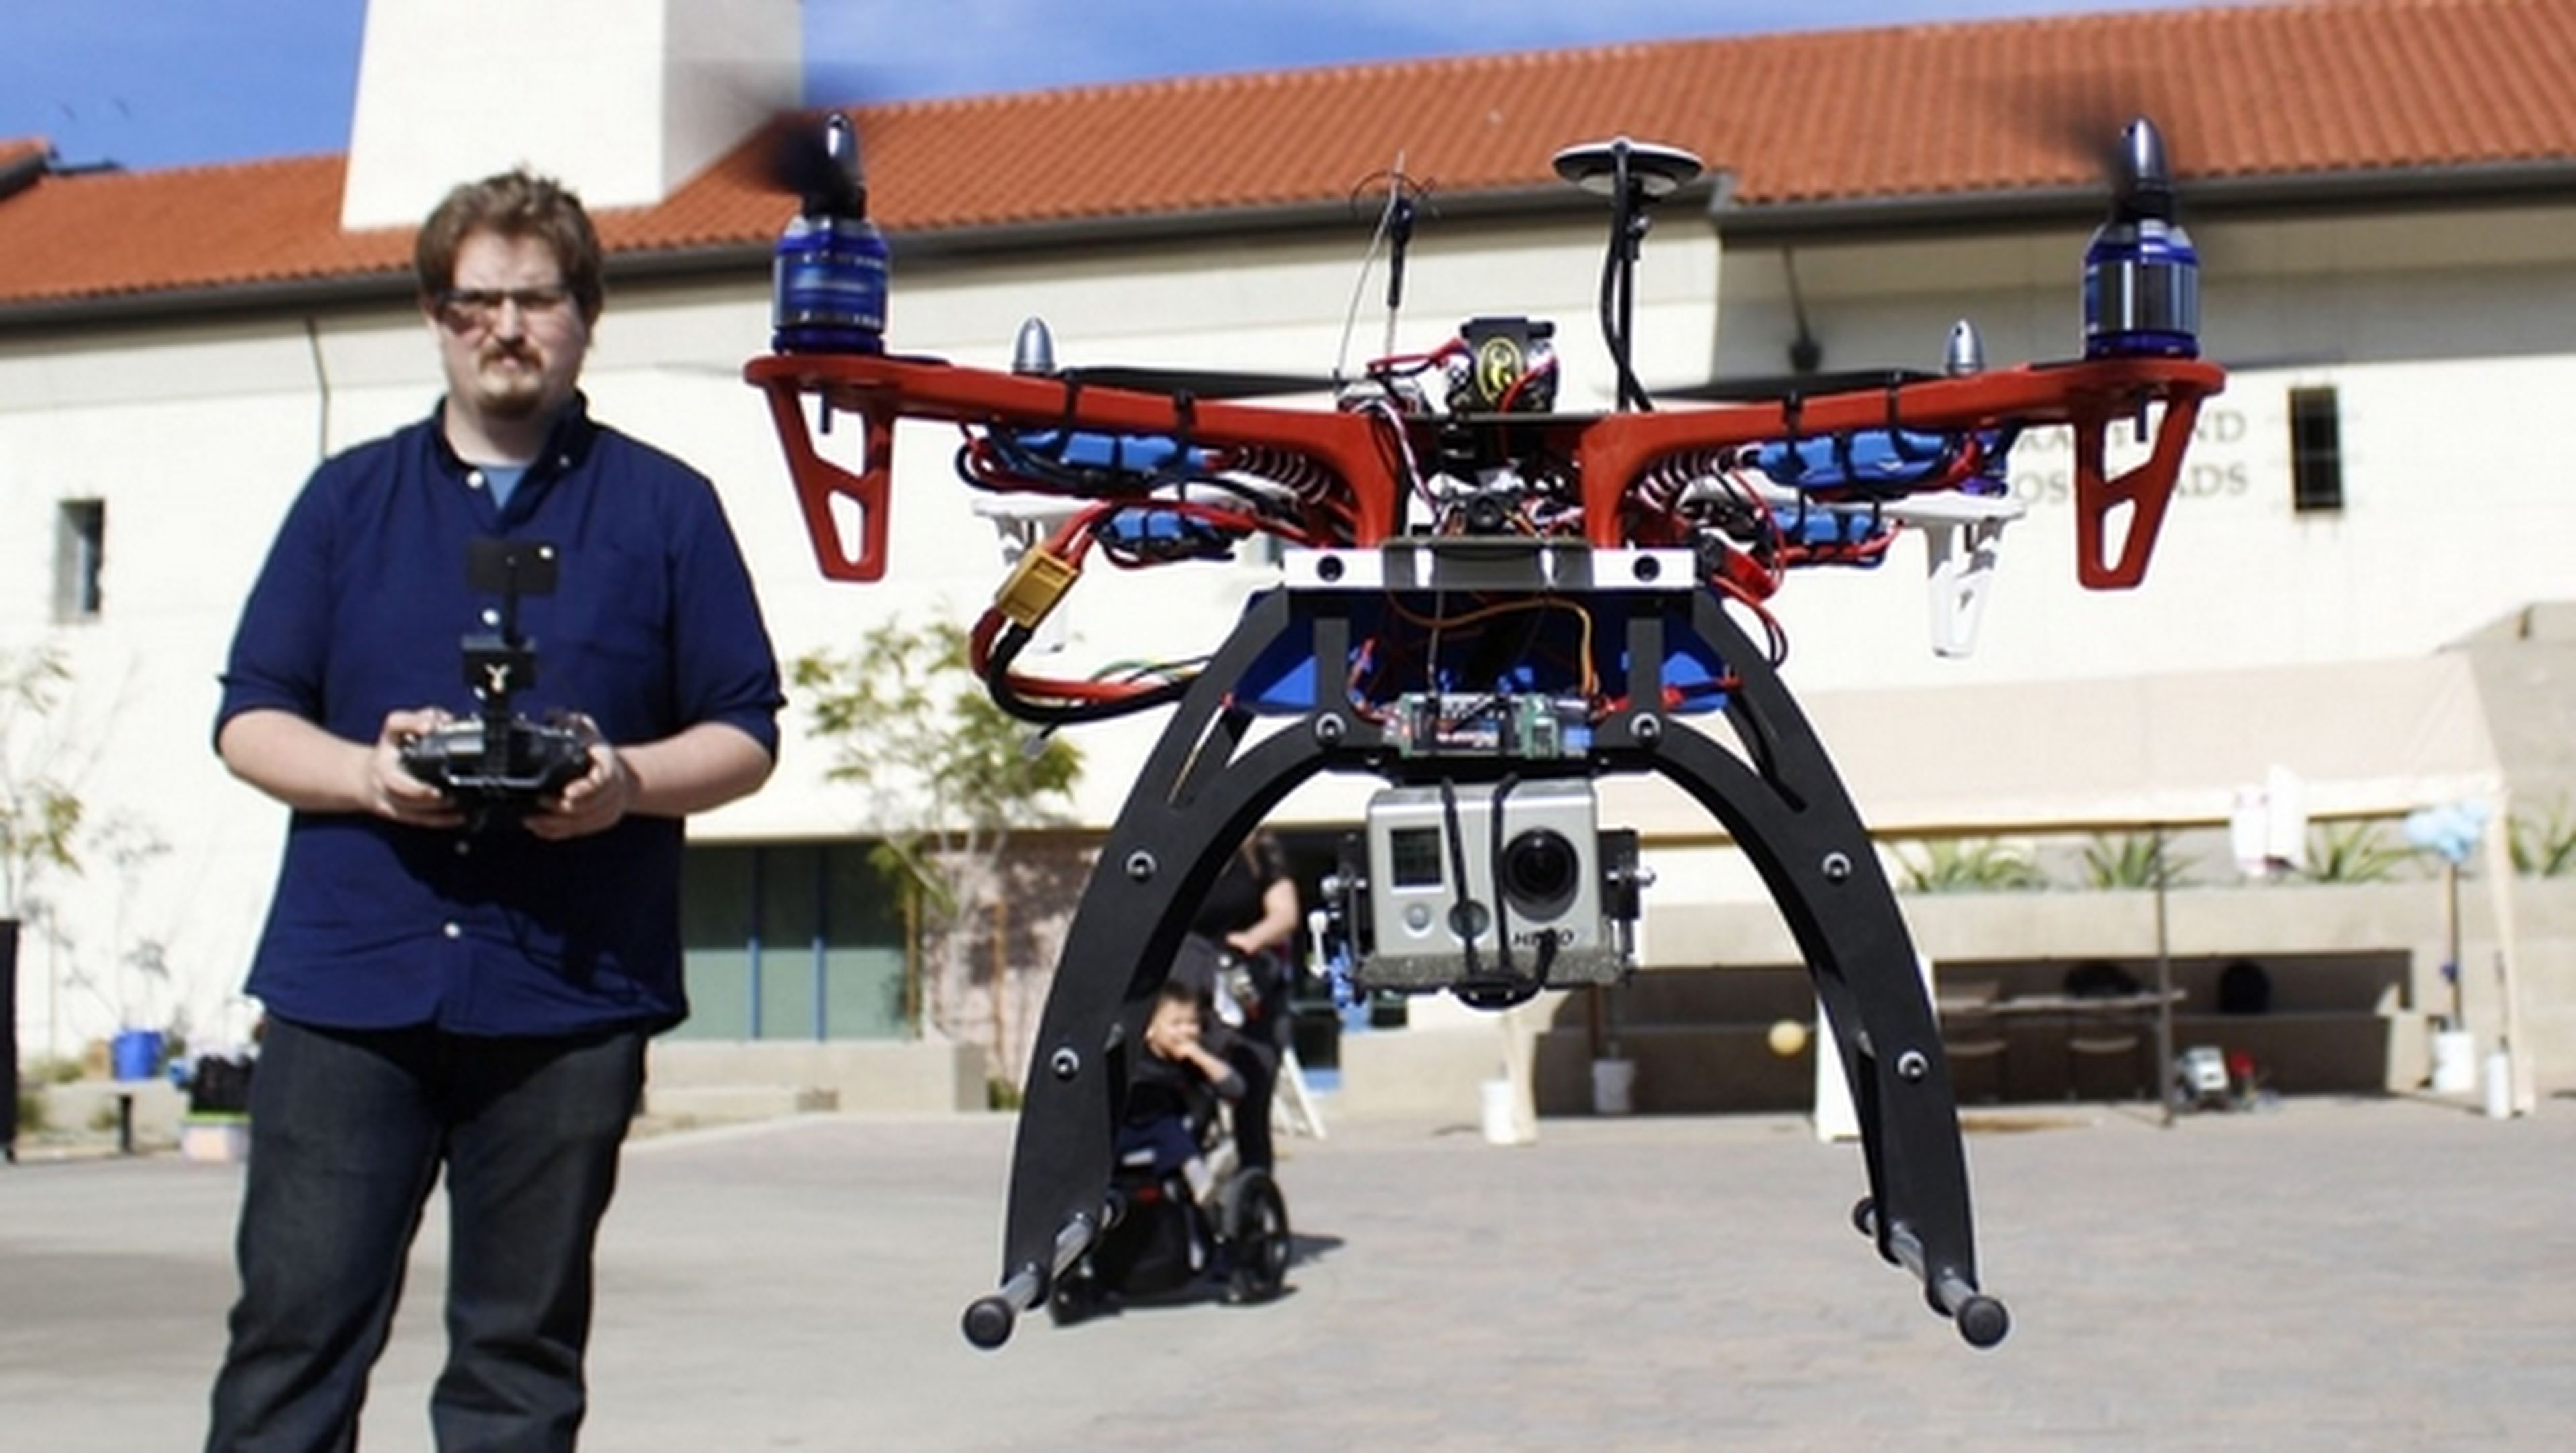 Piloto de drones, una profesión con futuro. Cursos, licencia, normas y legislación.